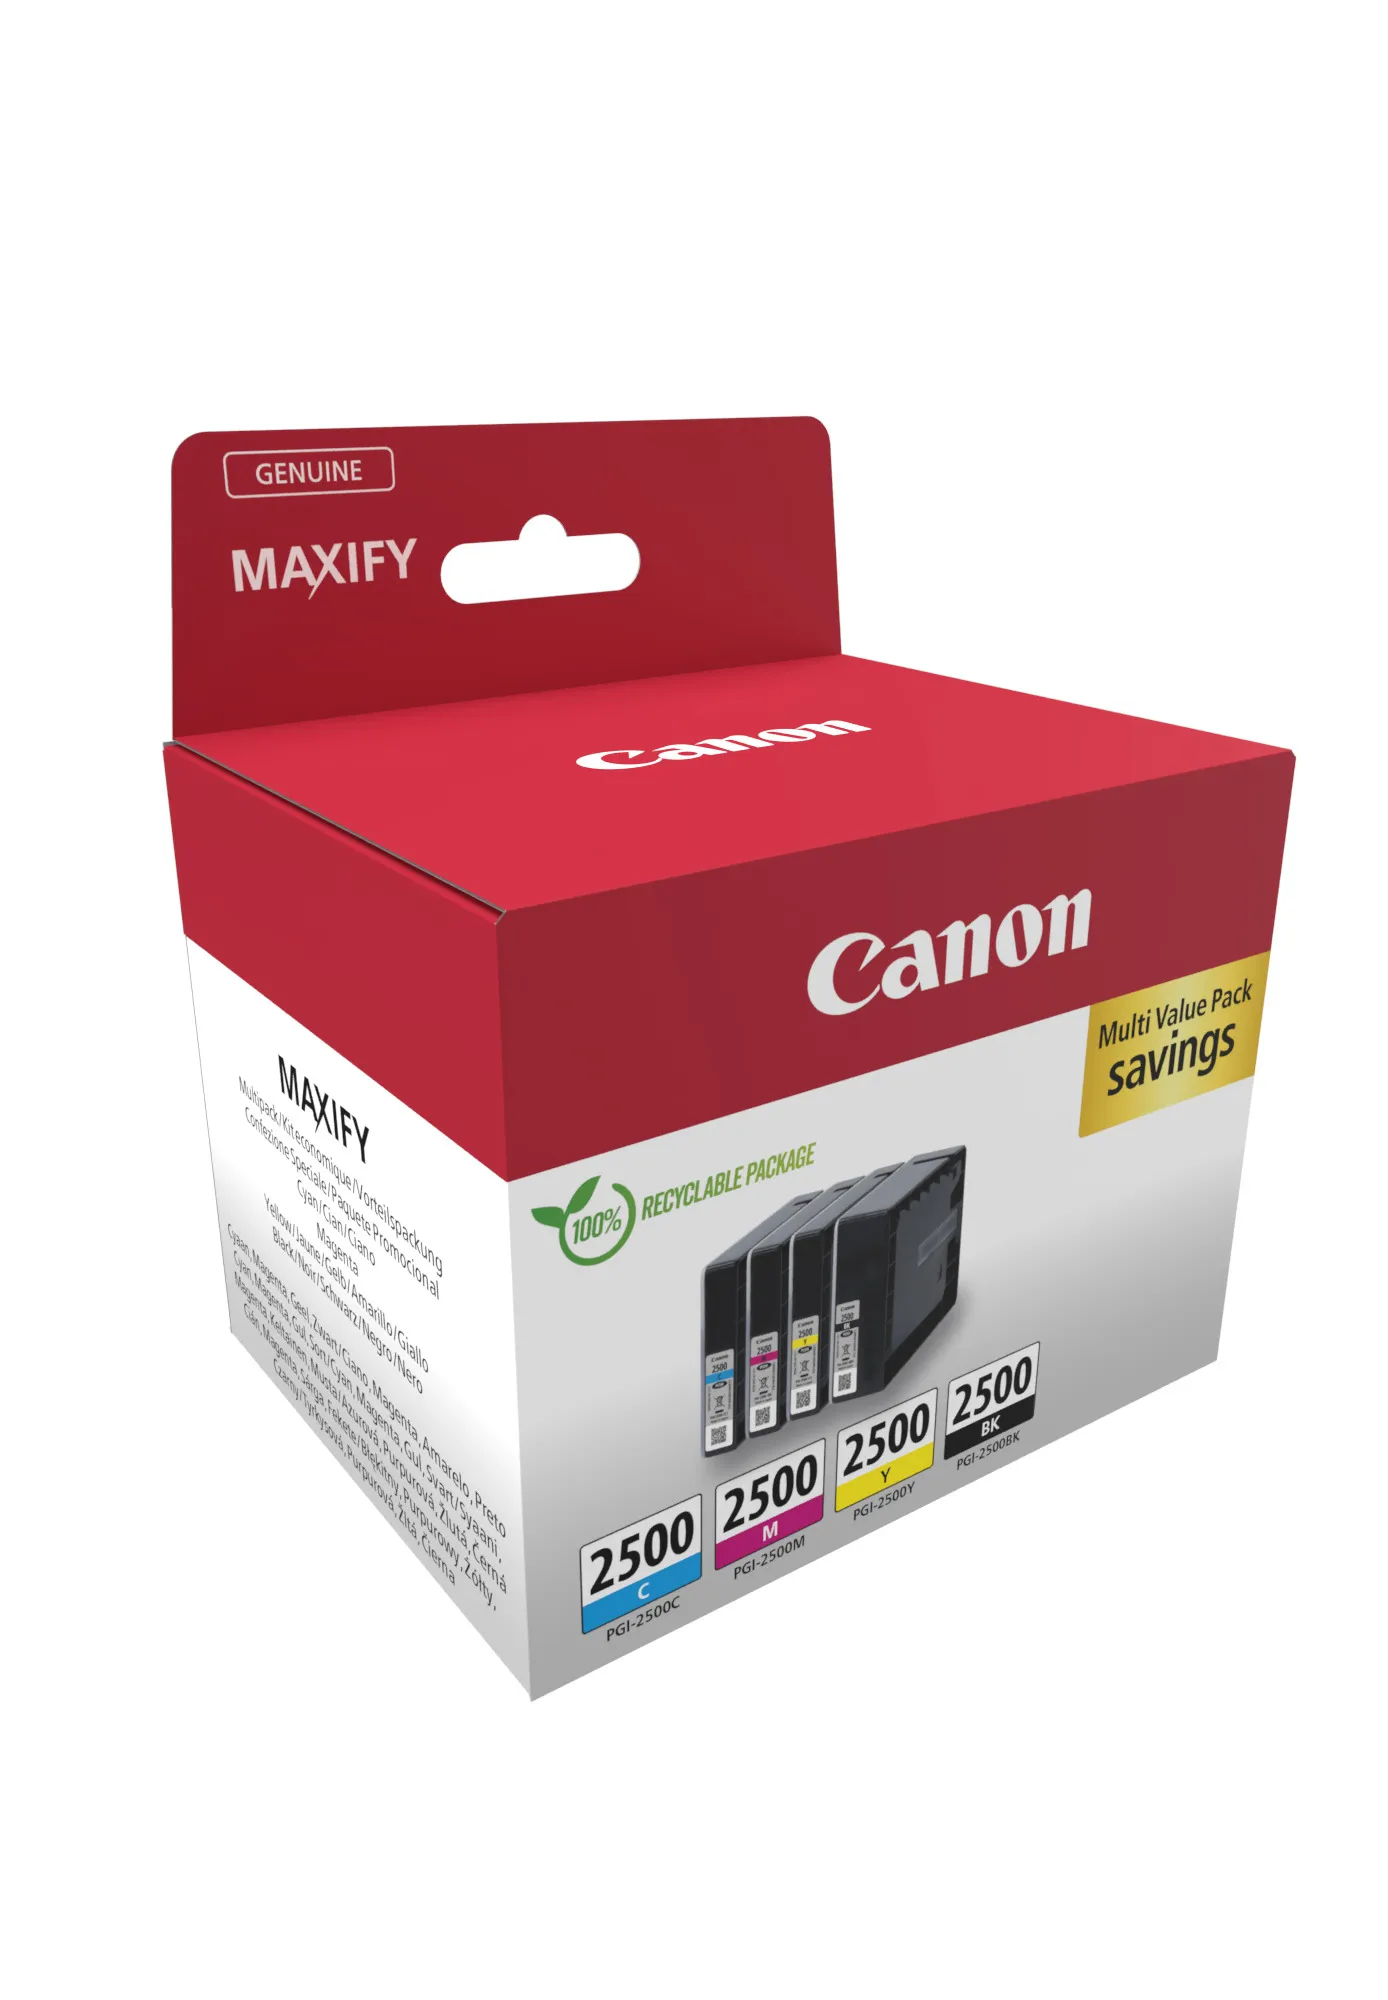 Vente CANON PGI-2500 Ink Cartridge BK/C/M/Y MULTI Canon au meilleur prix - visuel 2